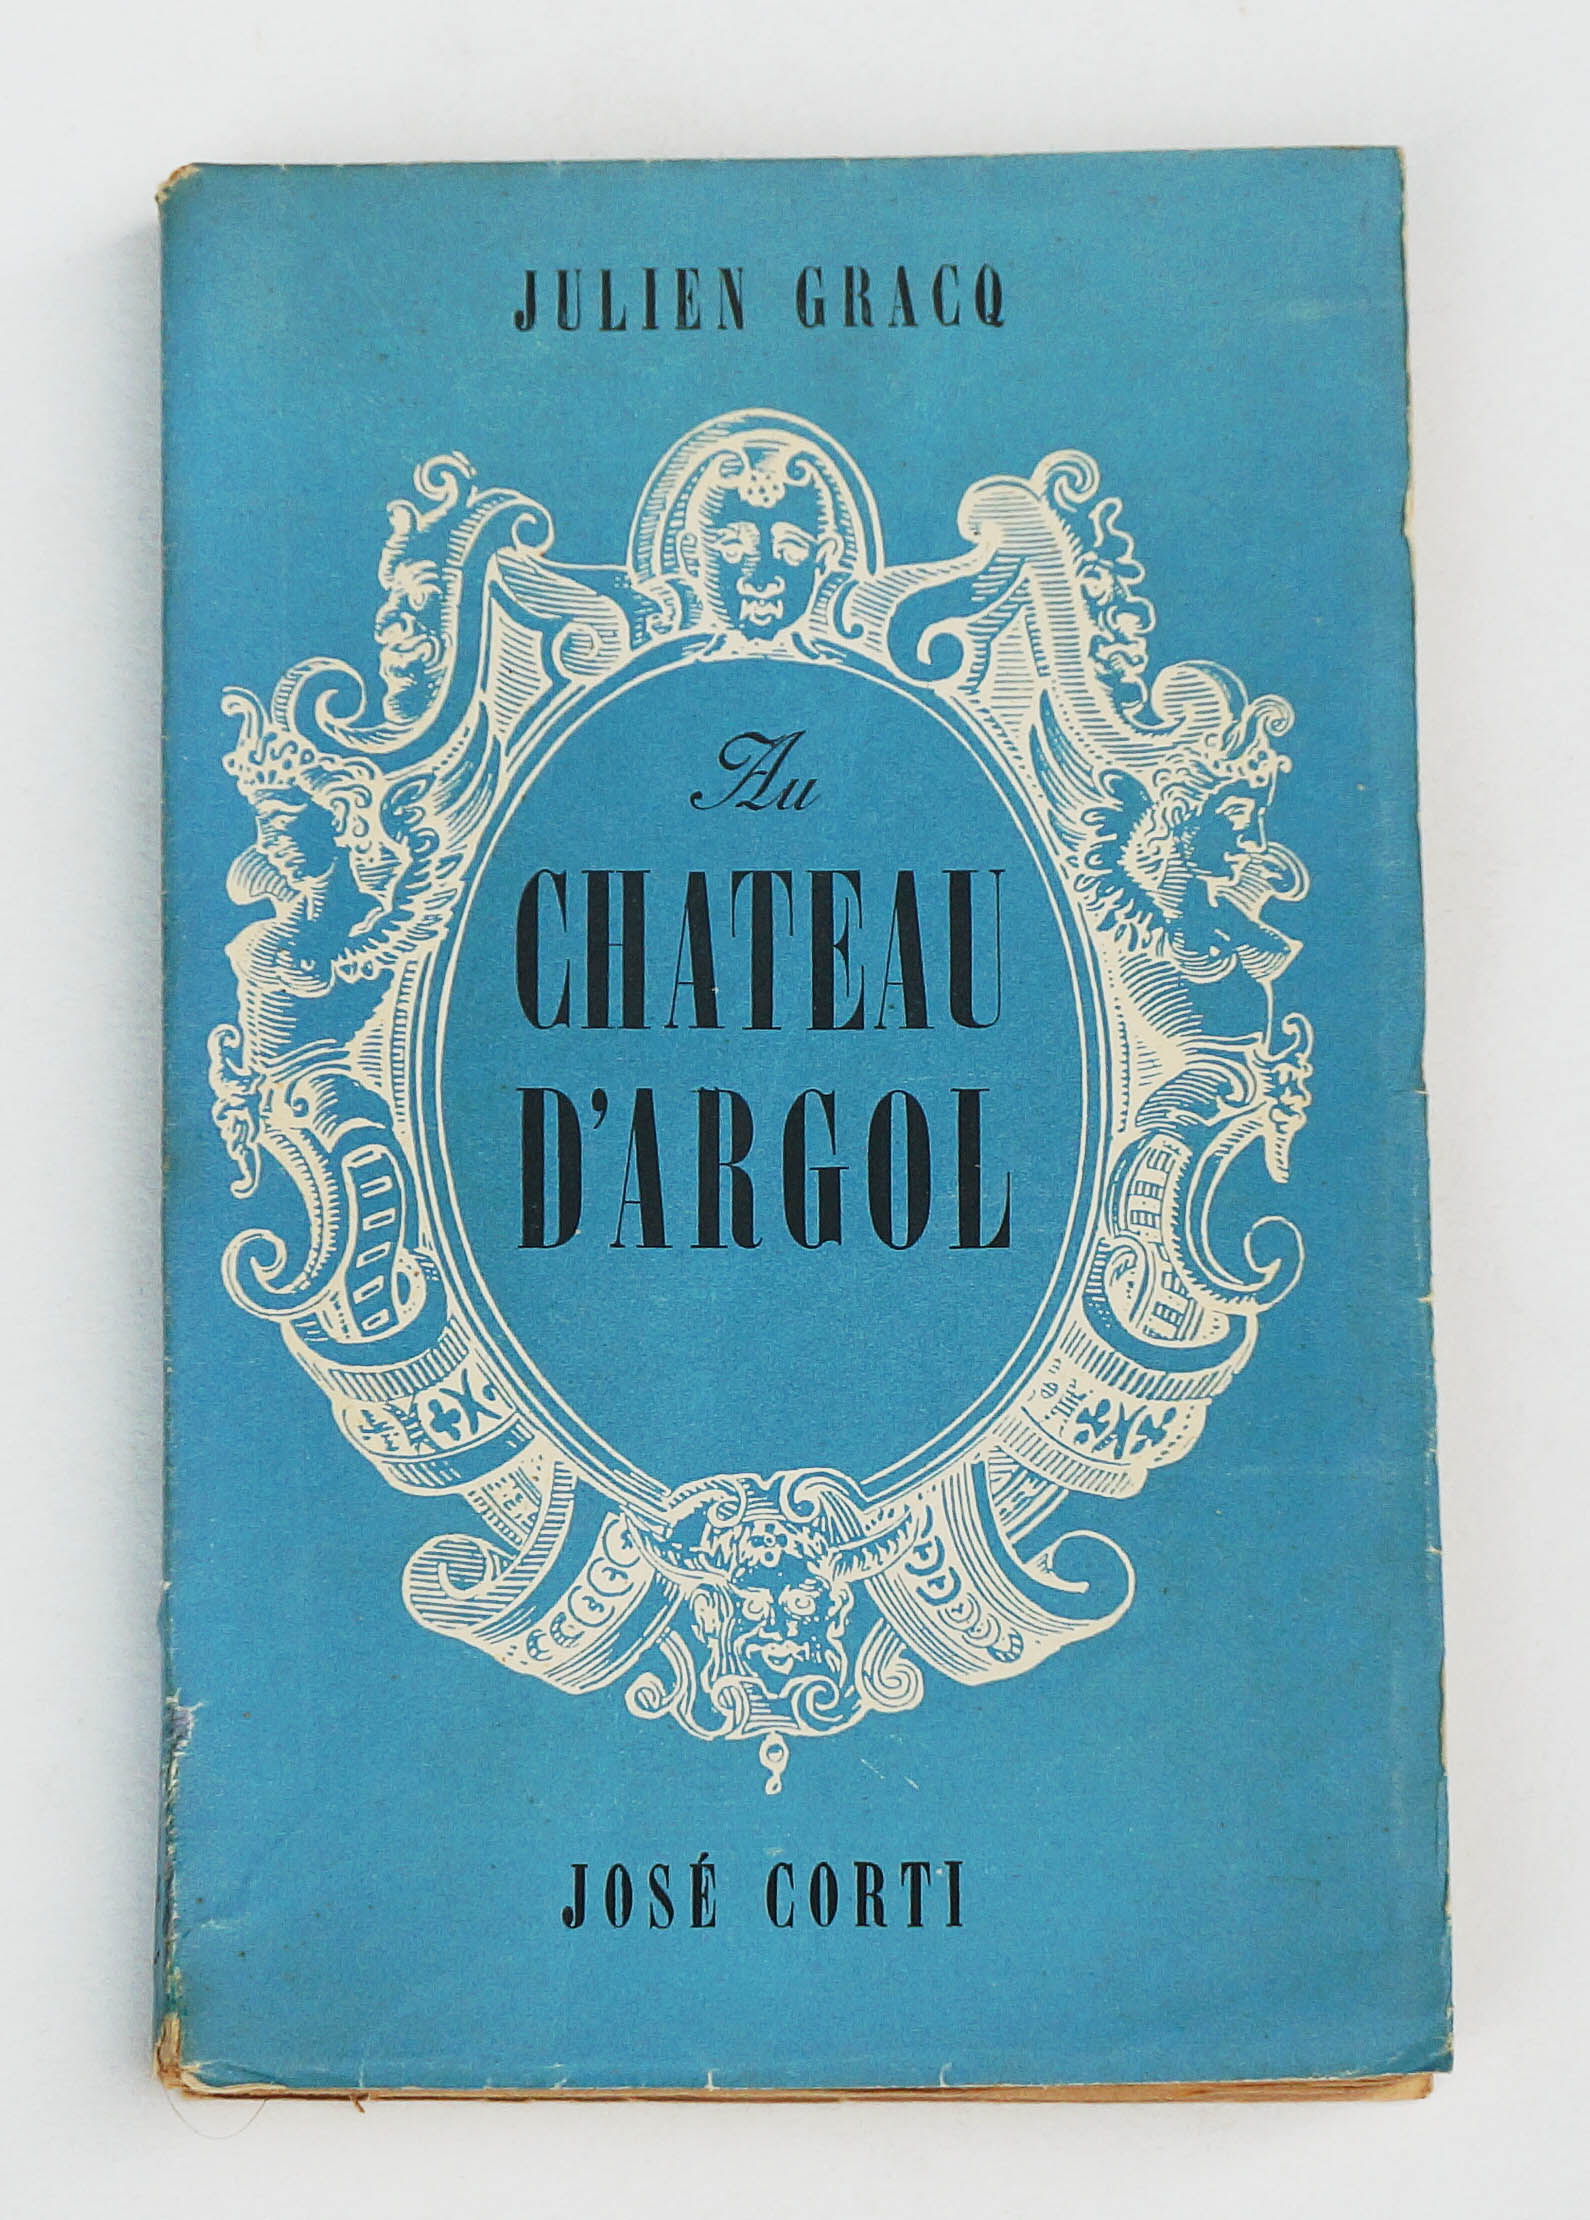 Julien Gracq « Au château d'Argol » José Corti, 2000 